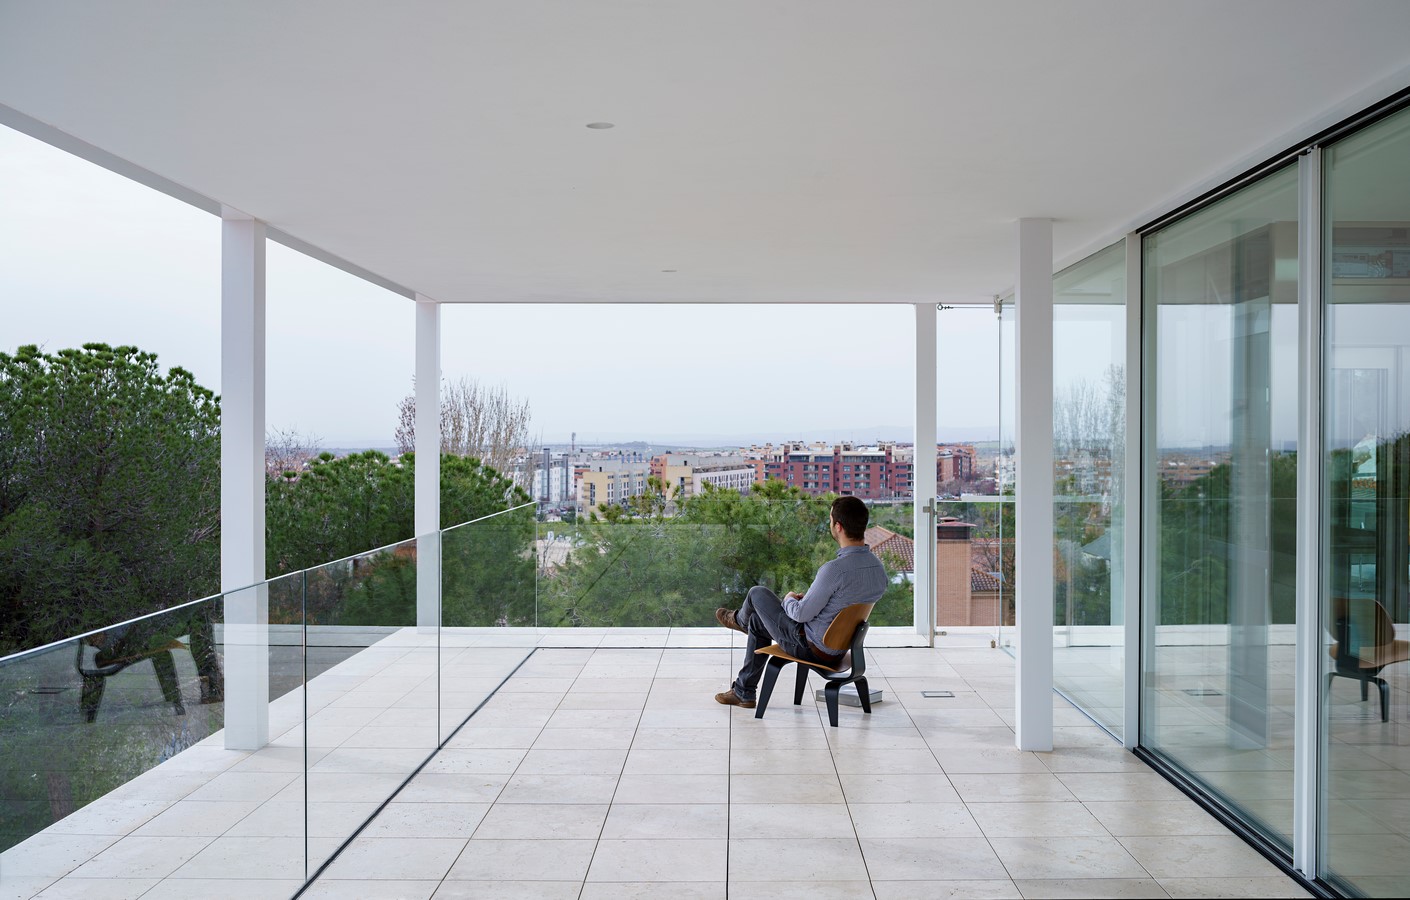 2021 ROTONDA HOUSE, MADRID By Alberto Campo Baeza - Sheet4